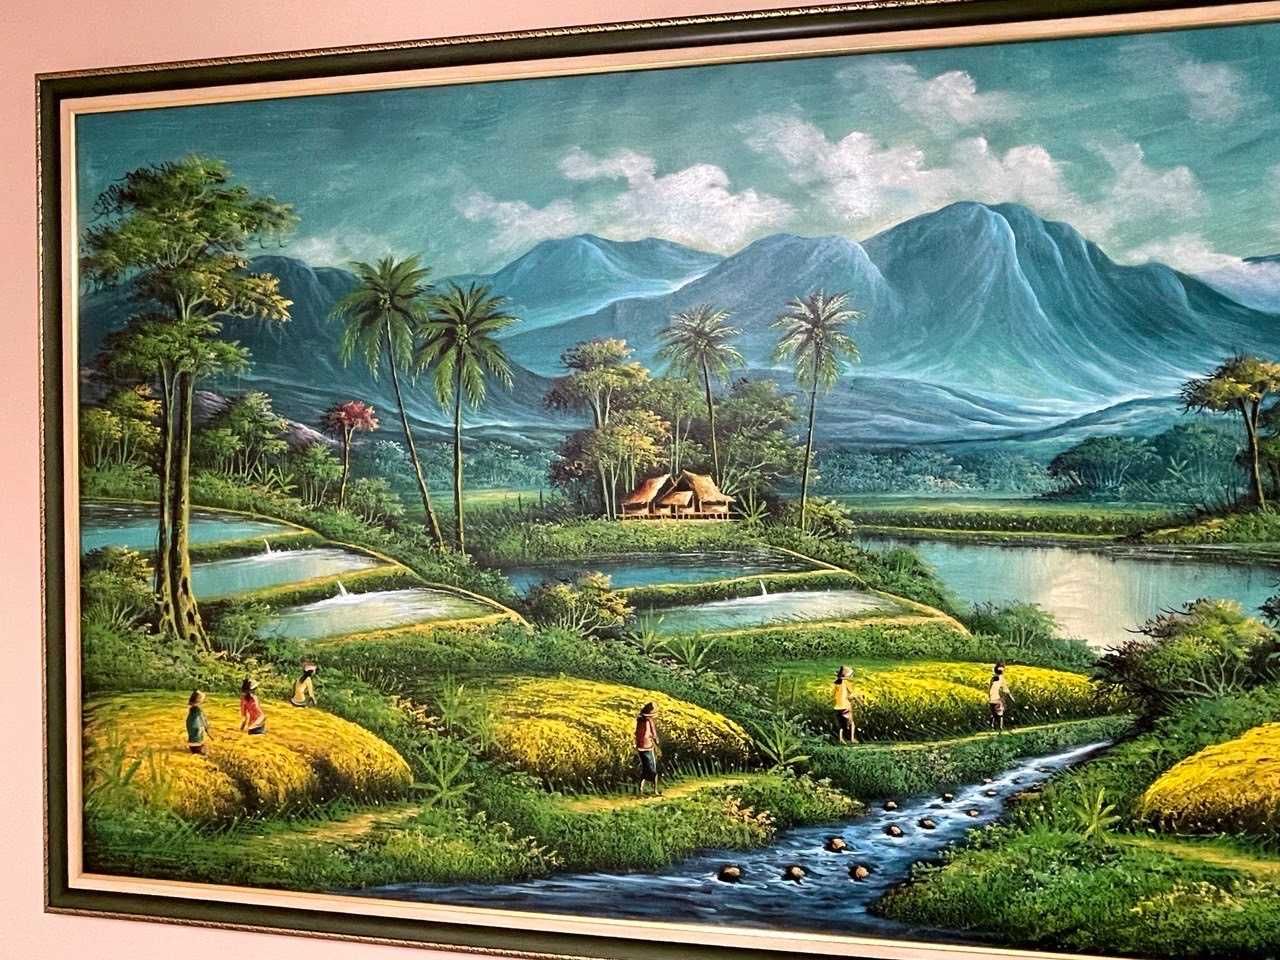 Голяма картина ръчно рисувана от о.Бали 205х108